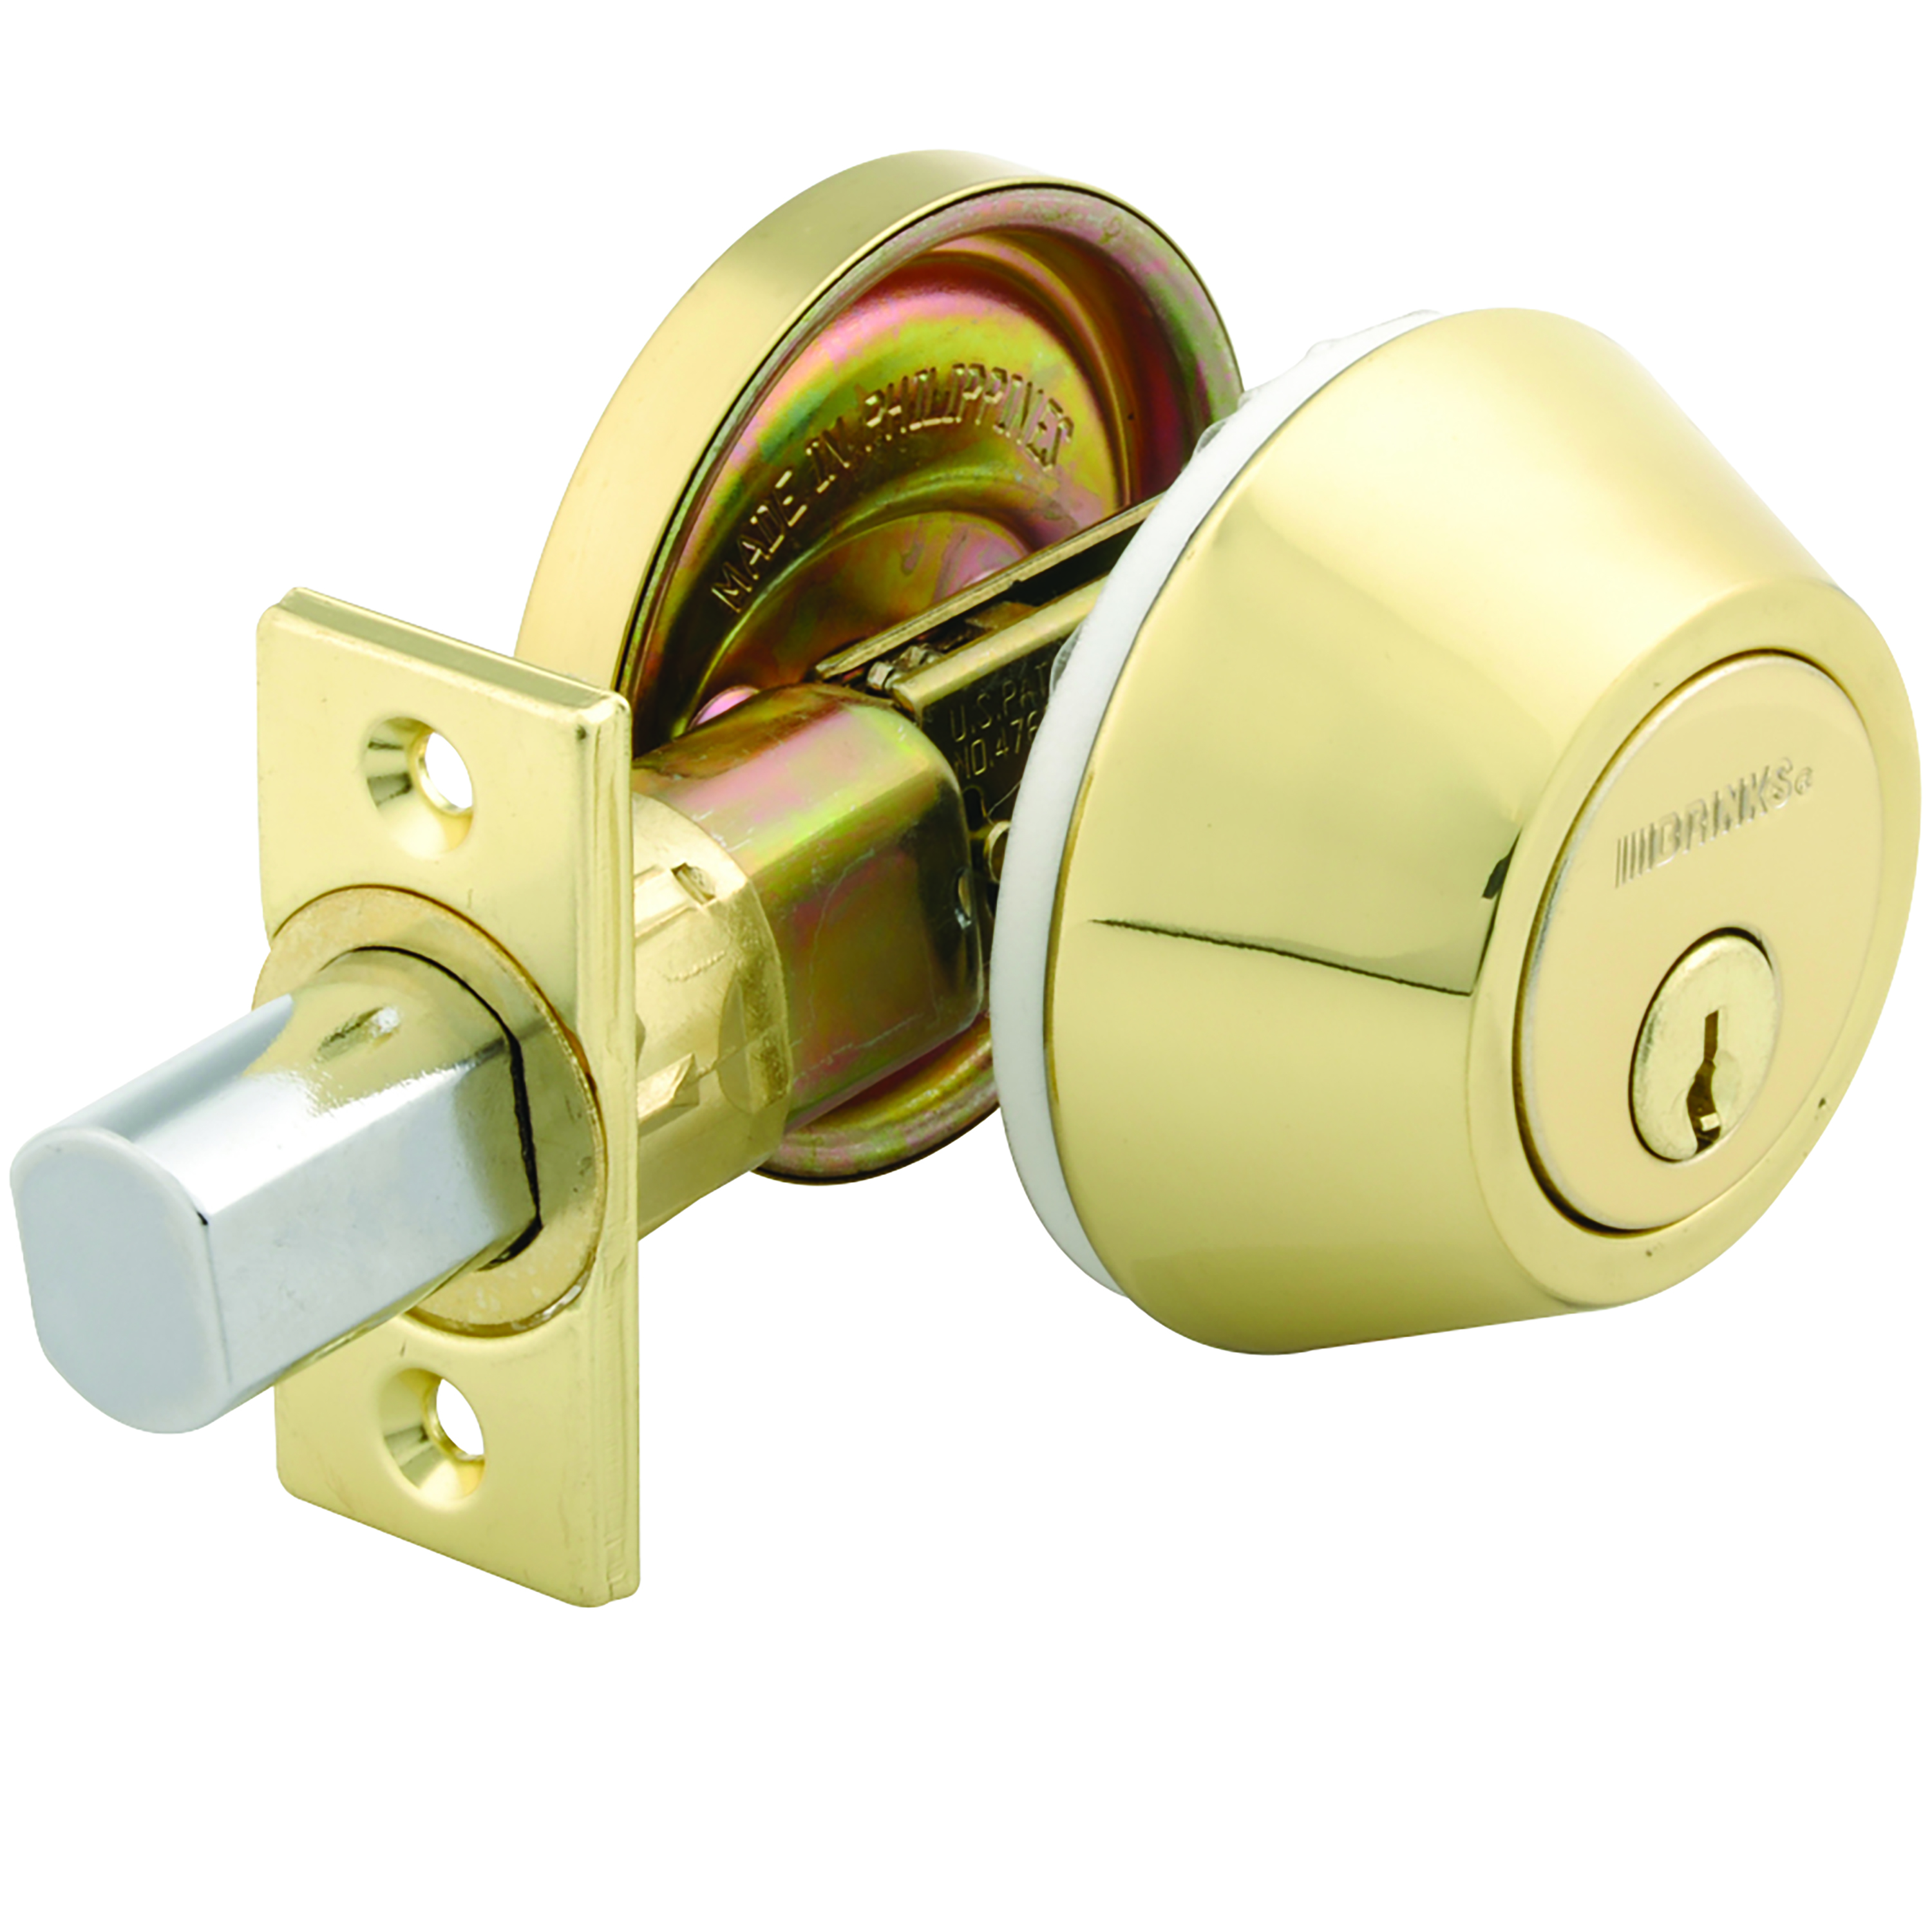 Brinks, Keyed Entry Mobile Home Single Cylinder Deadbolt, Polished Brass Finish - image 3 of 9